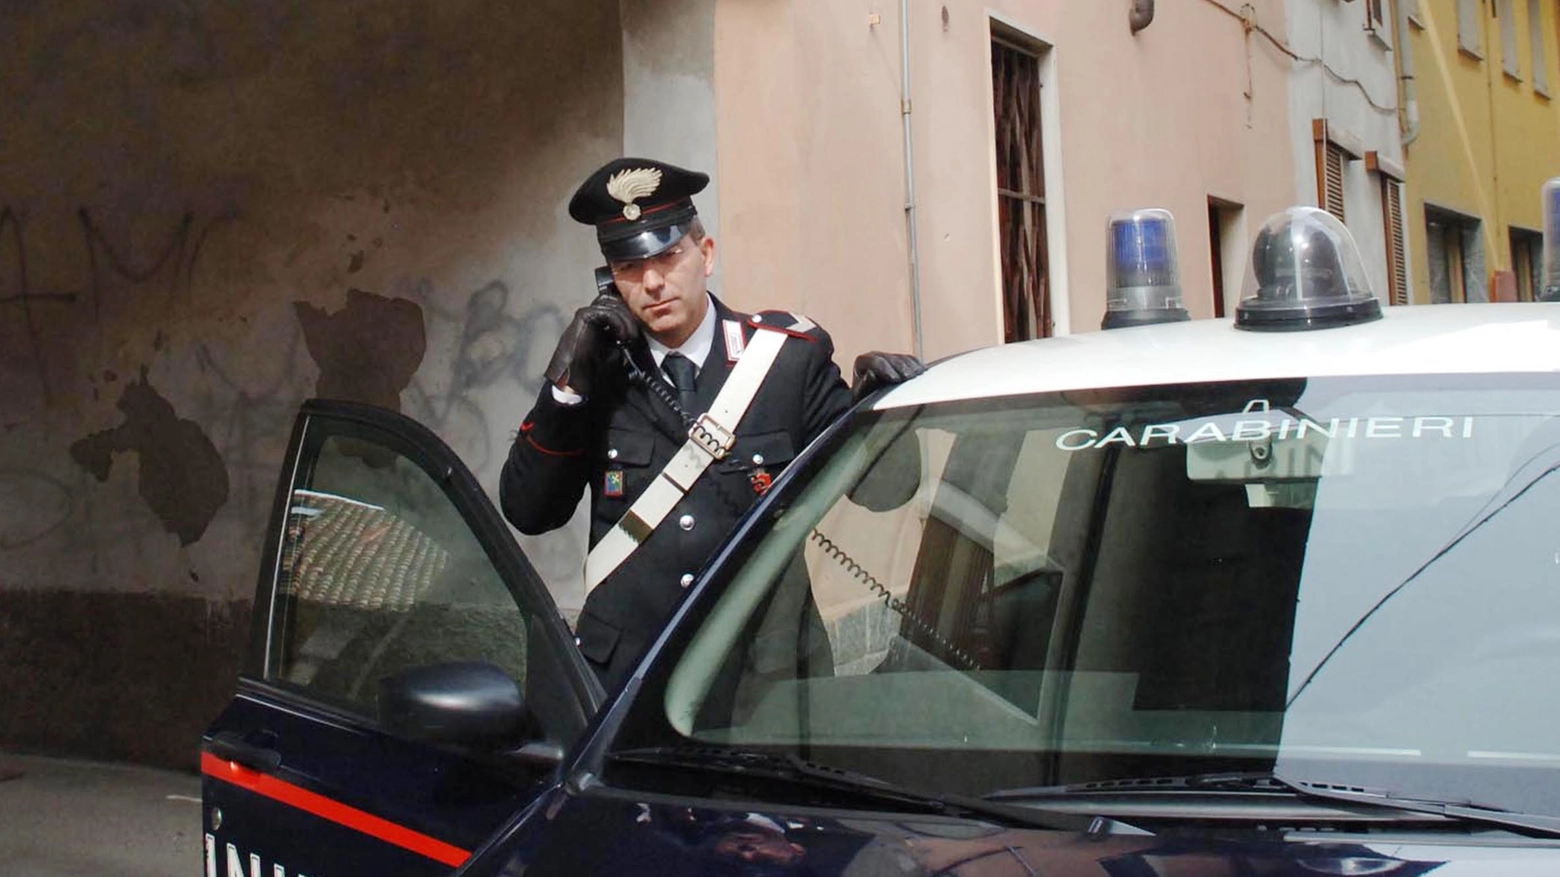 La denuncia è stata presentata ai carabinieri